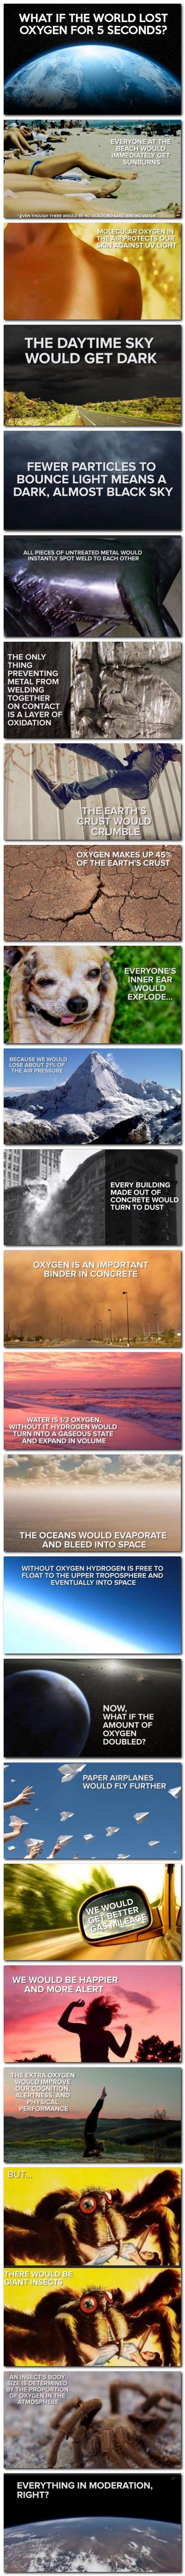 Si le monde n'avait plus d'oxygène pendant 5 secondes...